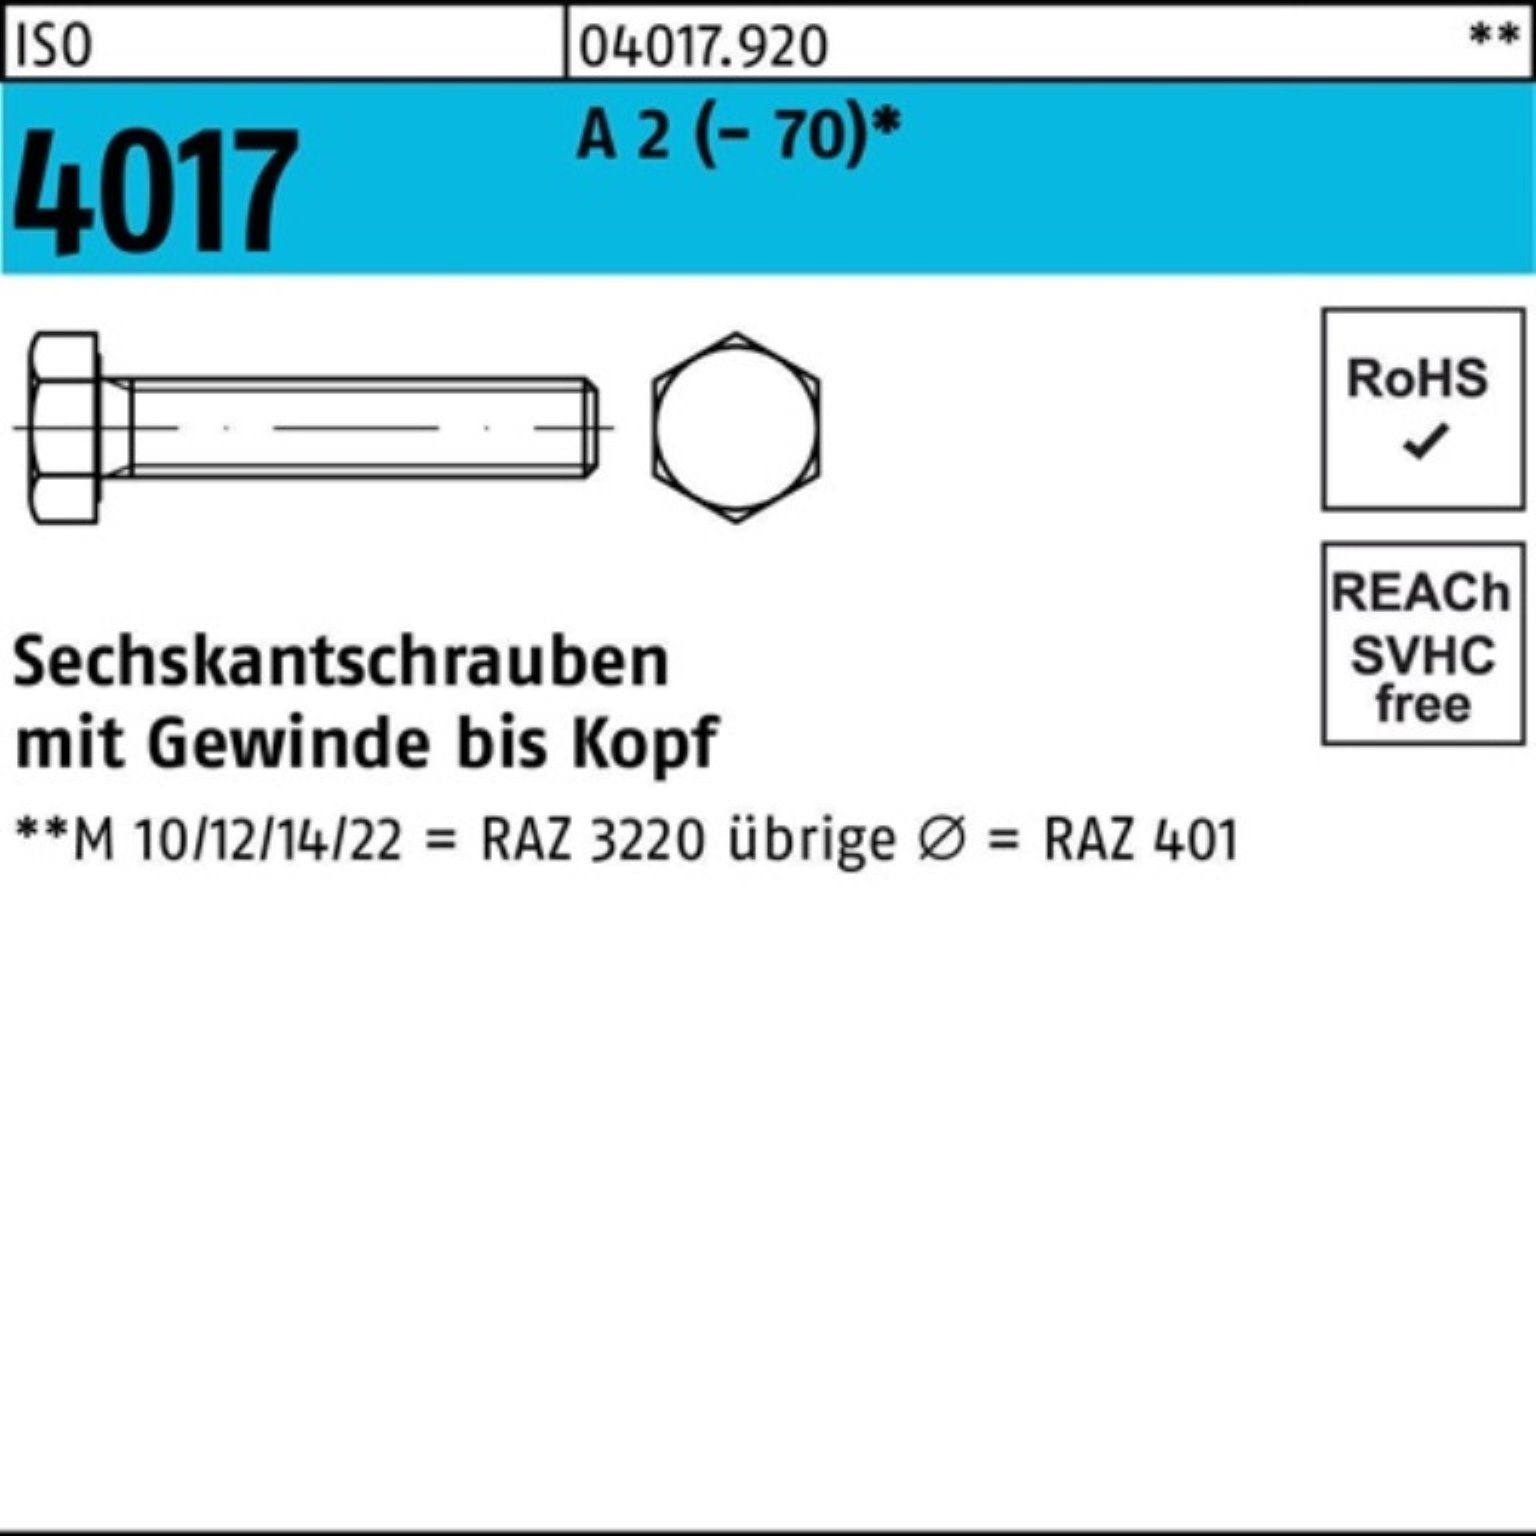 M36x VG Stück Sechskantschraube 80 Bufab ISO Sechskantschraube 2 (70) 100er 4017 A Pack 1 I